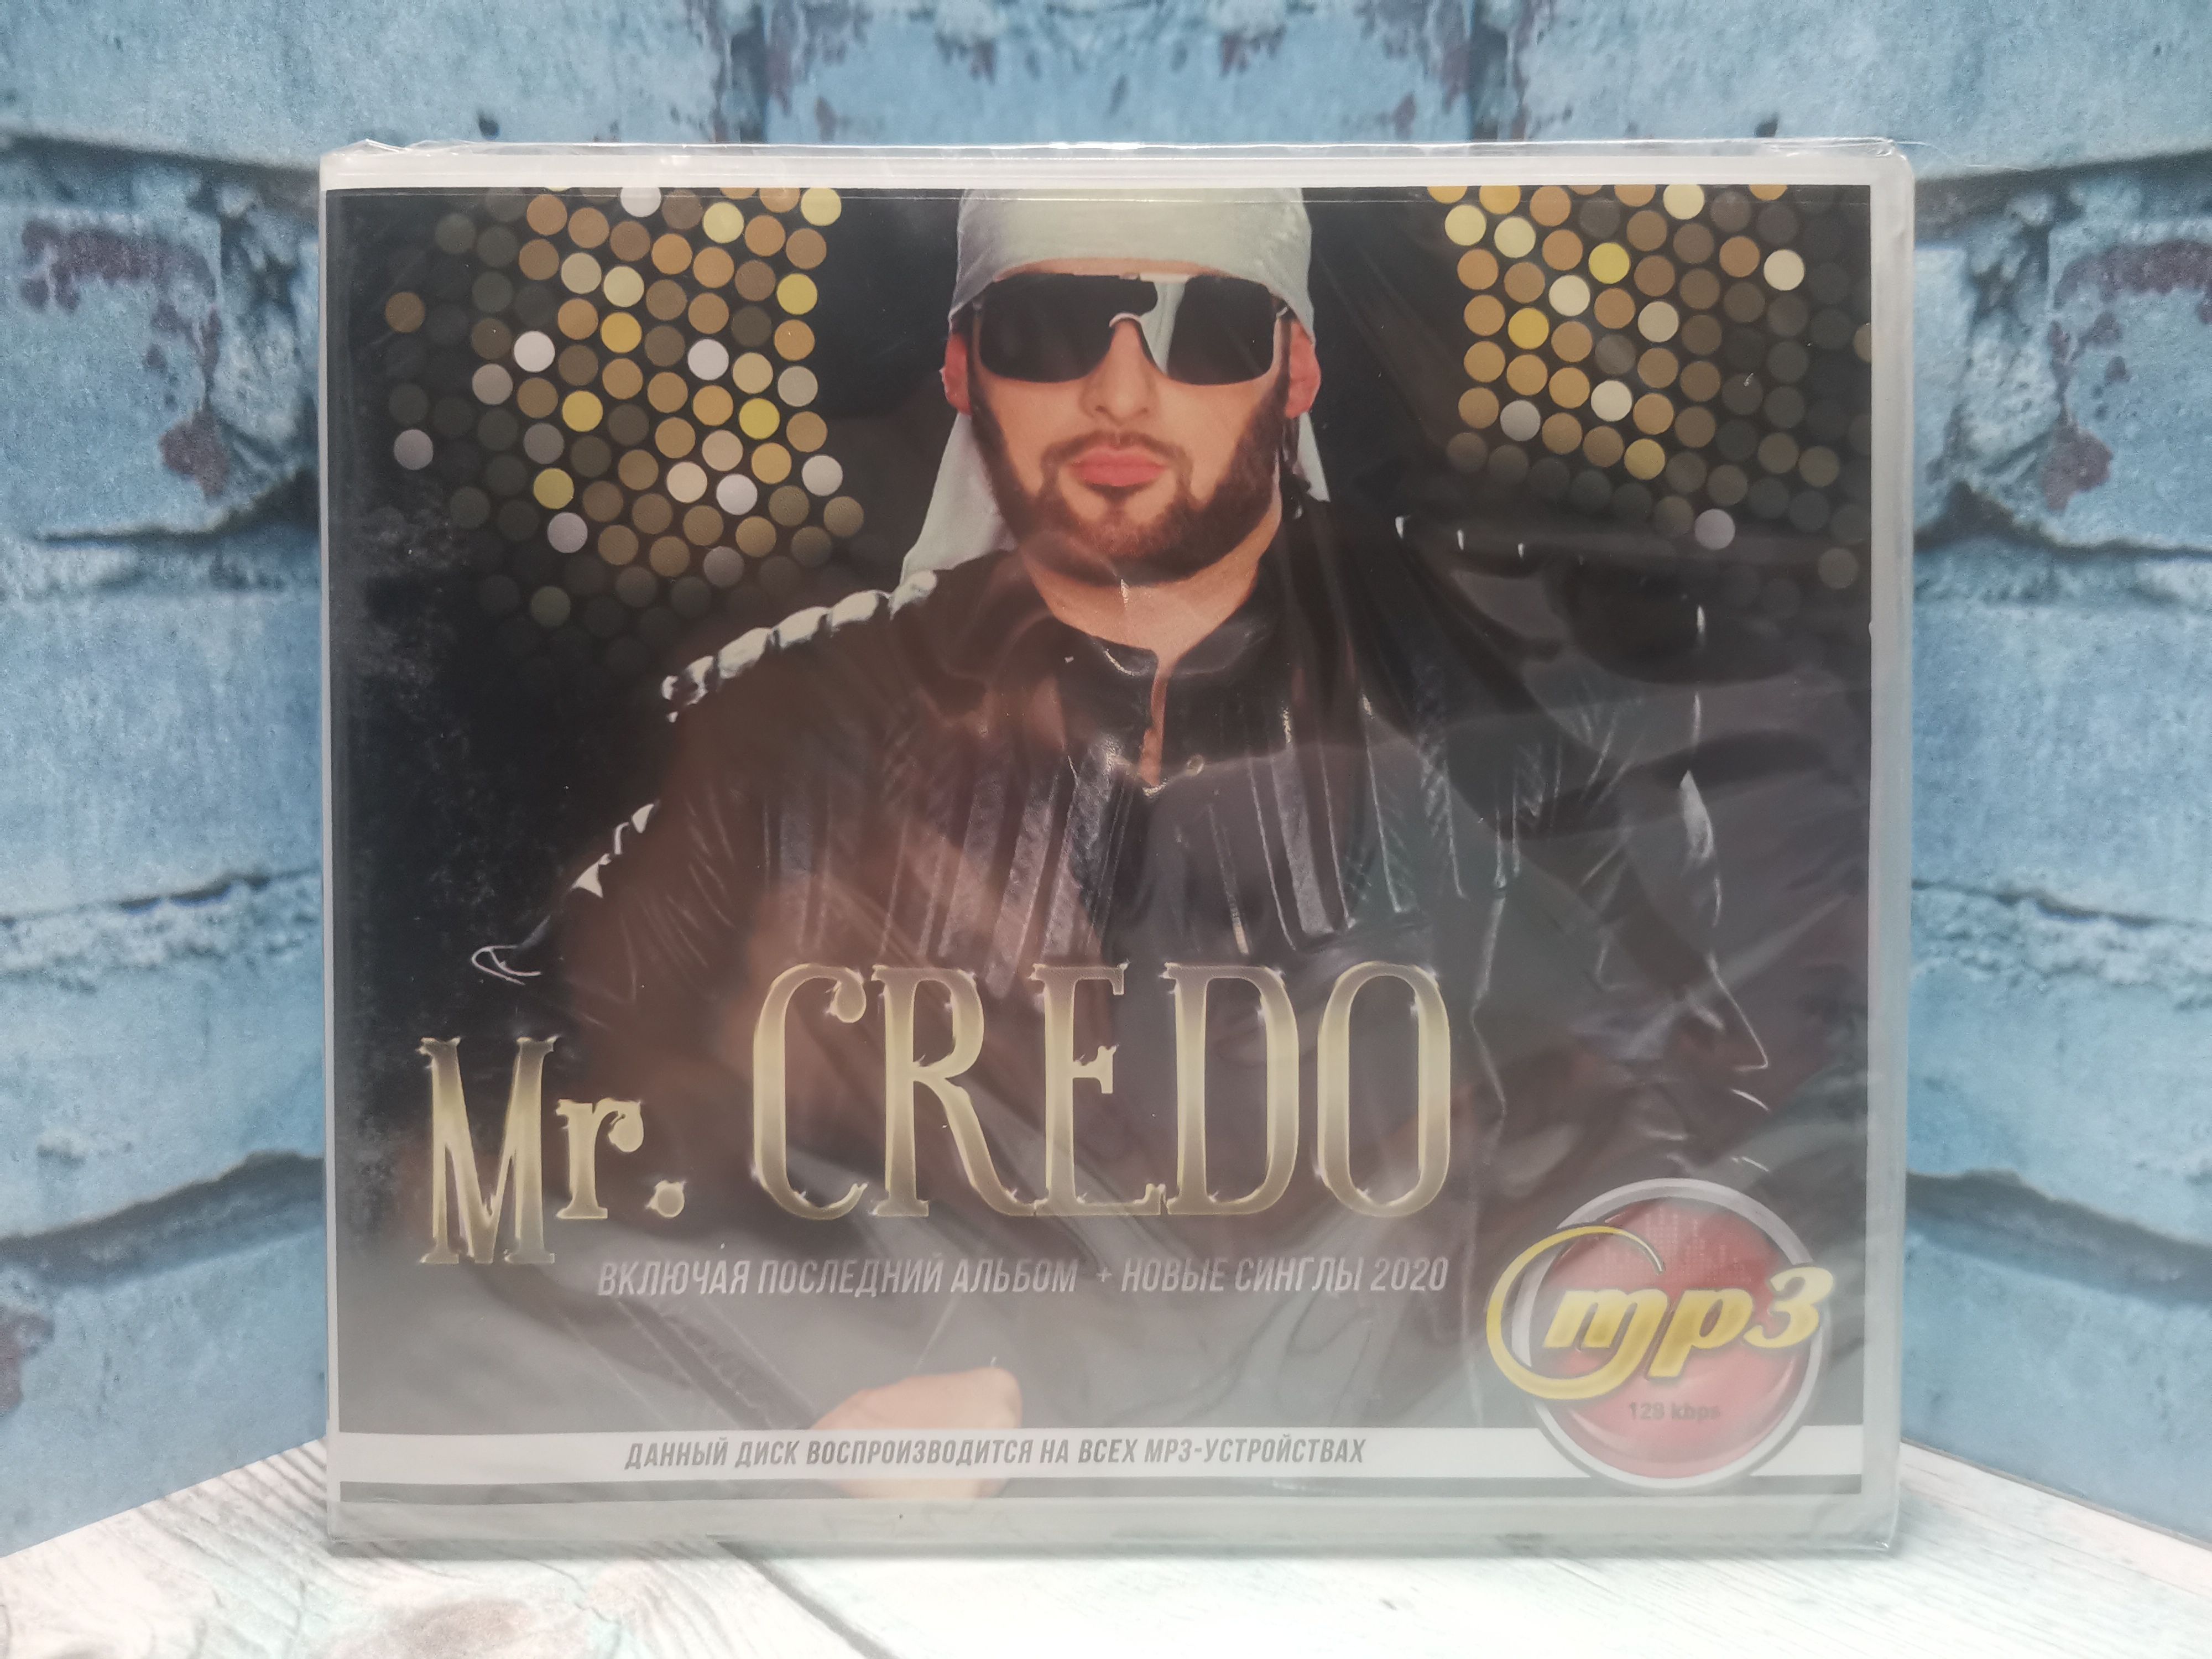 Mr credo mp3